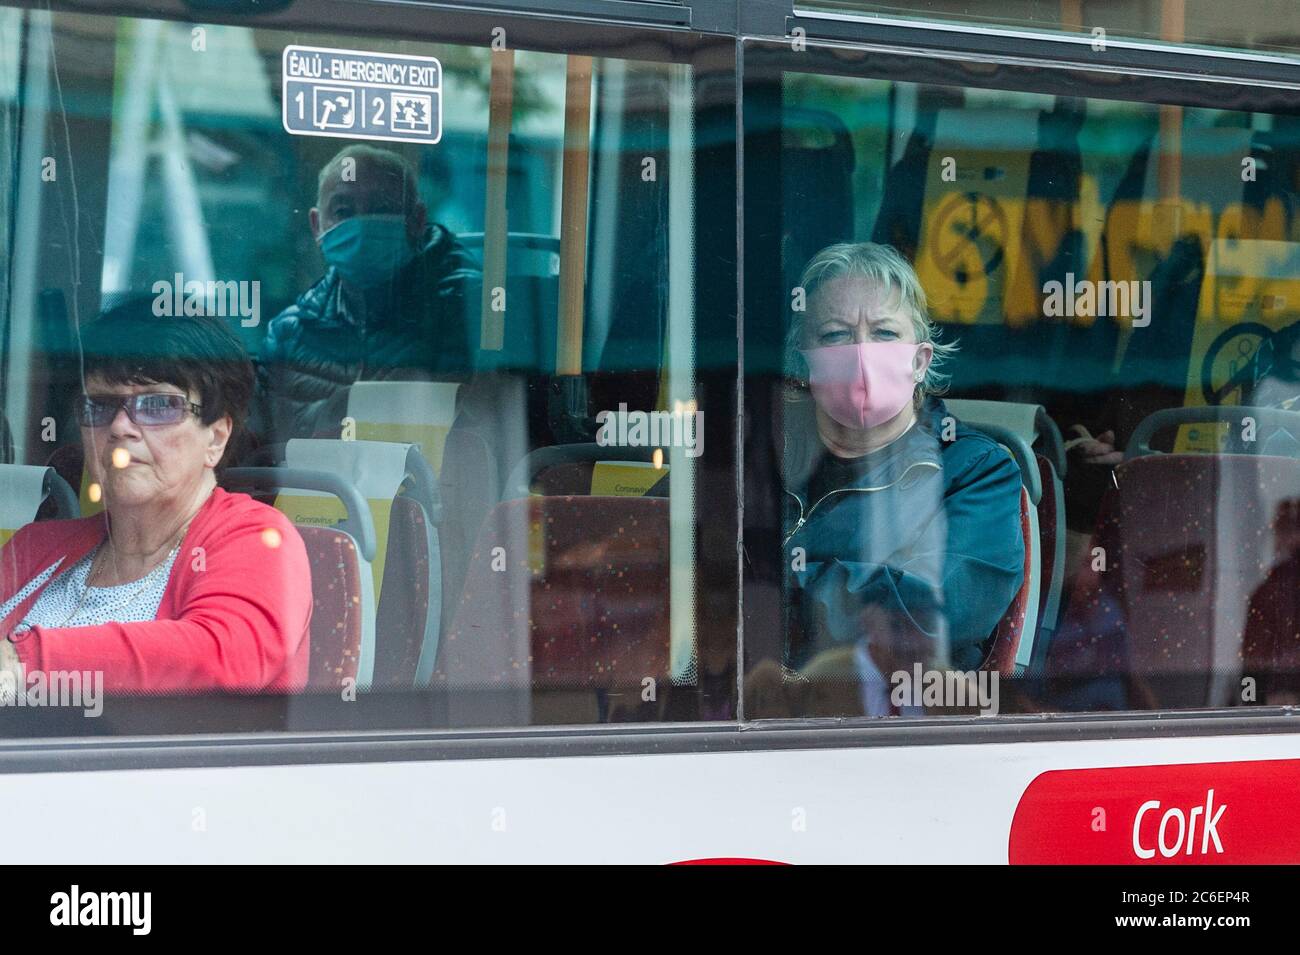 Cork, Irlanda. 9 luglio 2020. Una donna indossa una maschera facciale su un autobus Eireann in Cork città oggi, mentre un passeggero collega viaggia senza una maschera. L'uso di maschere facciali sui mezzi di trasporto pubblico è diventato obbligatorio in Irlanda lunedì 29 giugno. Credit: Notizie dal vivo di AG/Alamy Foto Stock